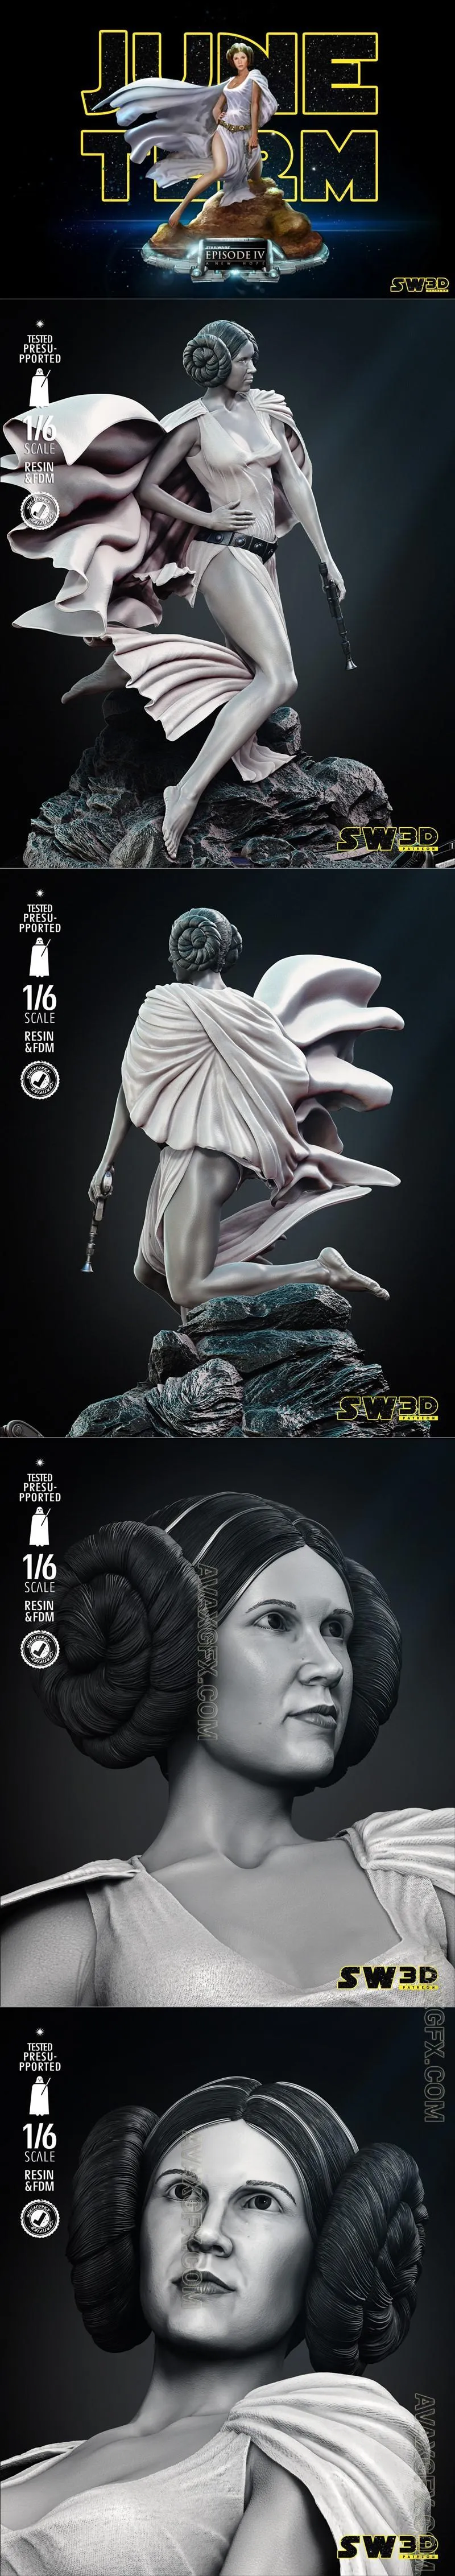 SW3D - Leia Sculpture - STL 3D Model